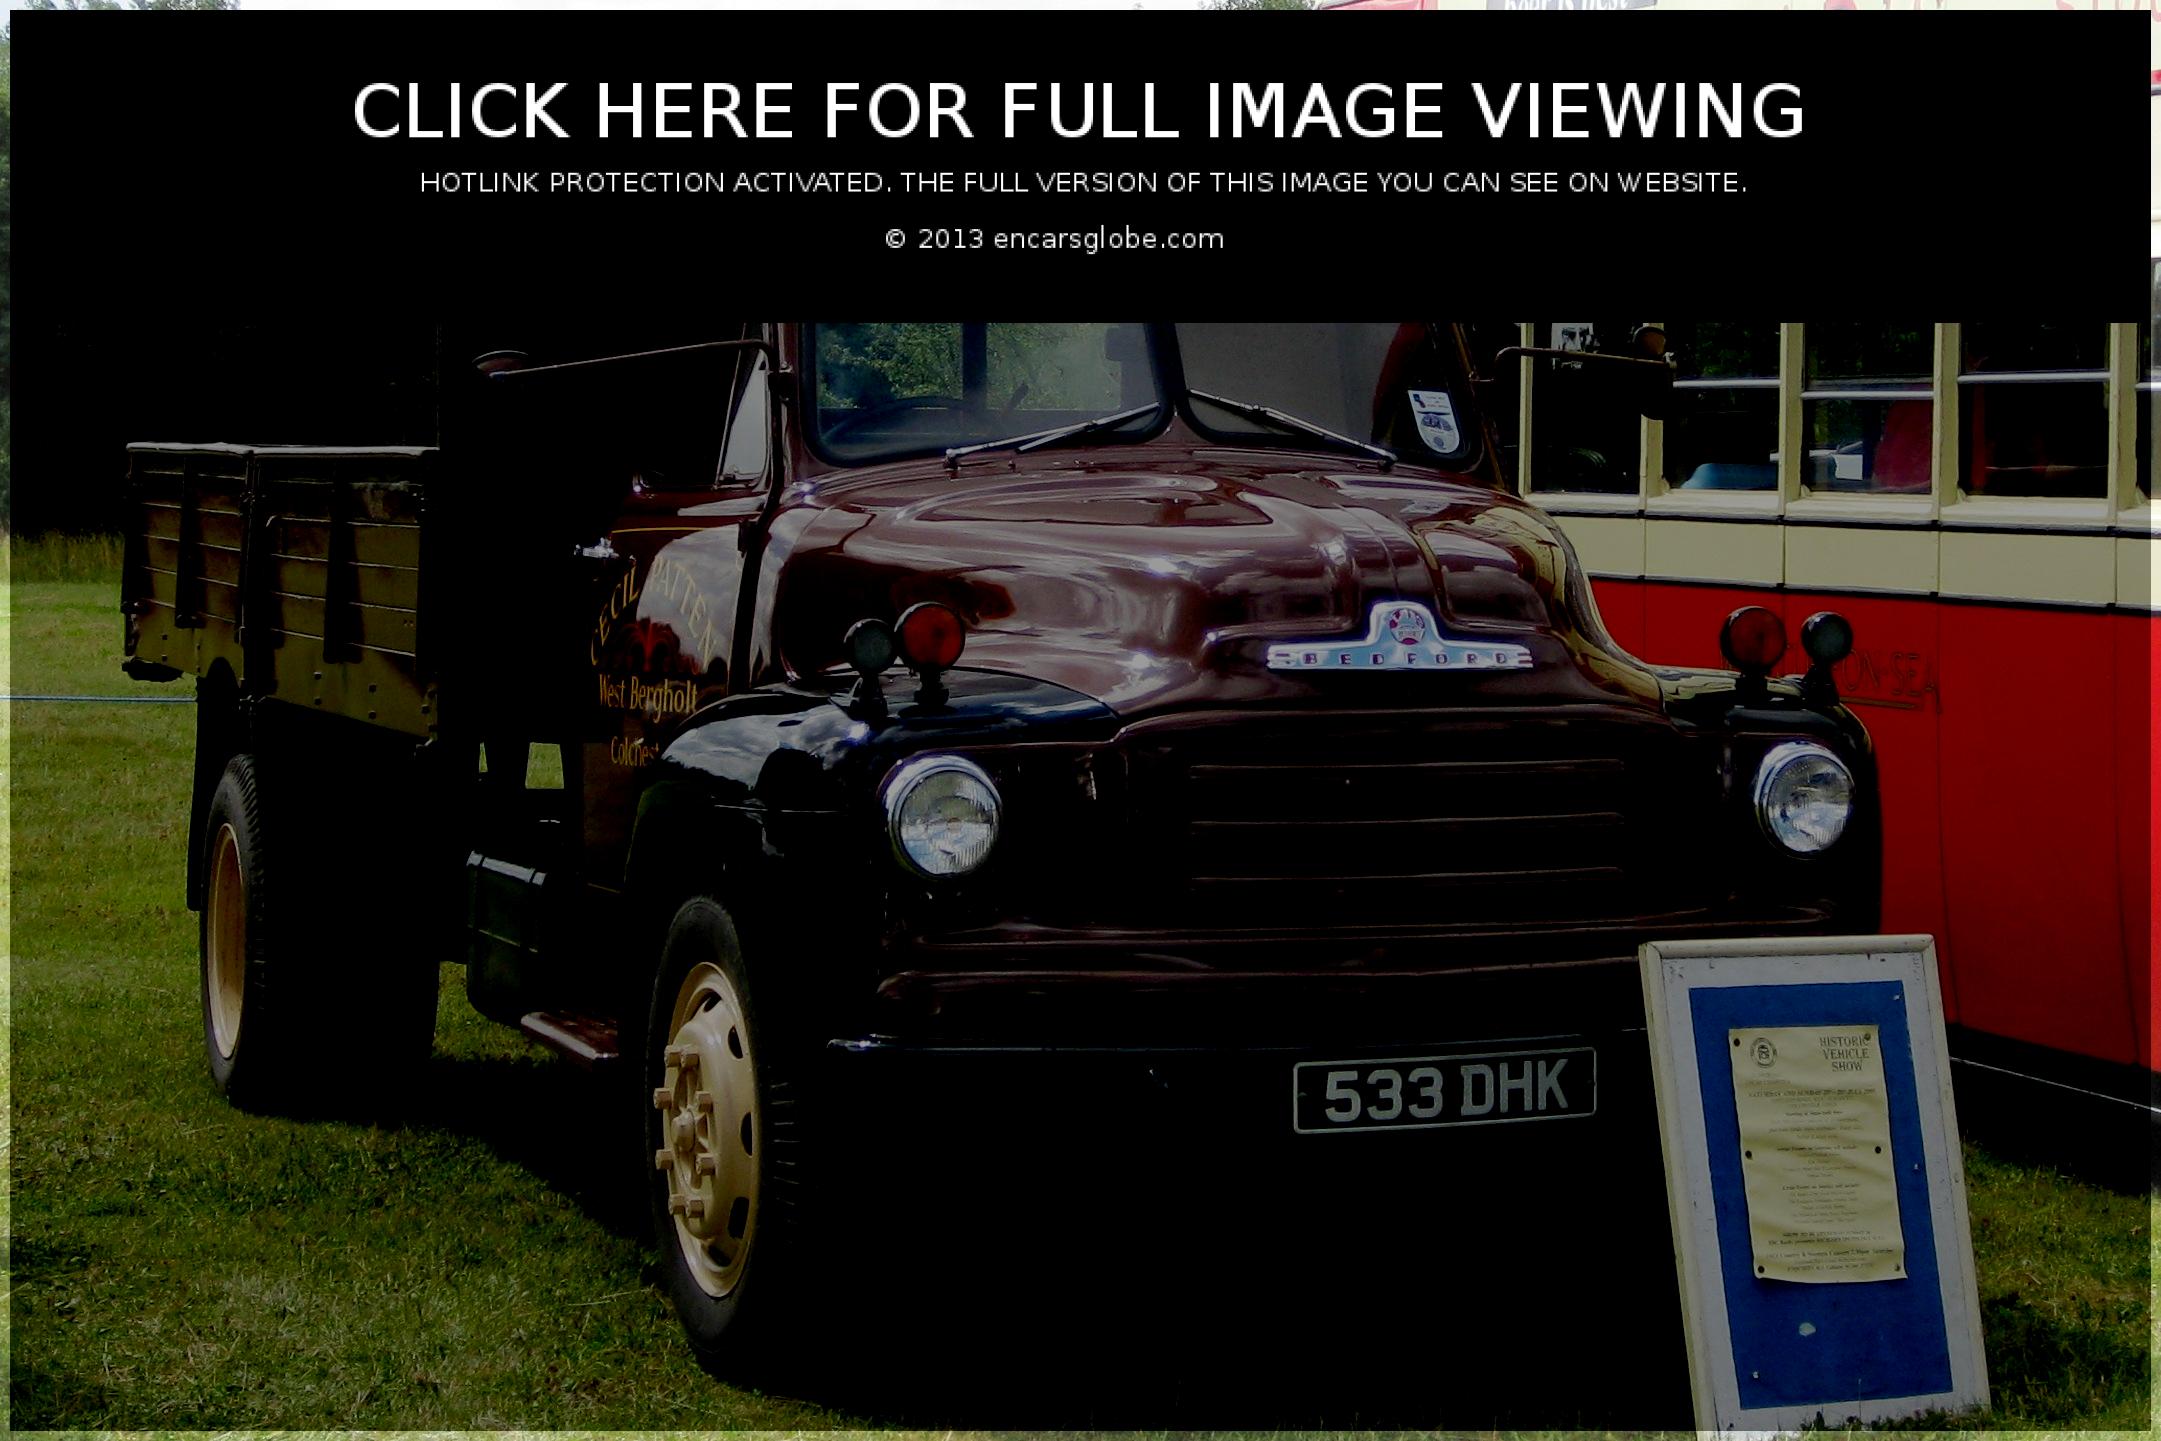 Bedford A Type: Galerie de photos, informations complètes sur le modèle...